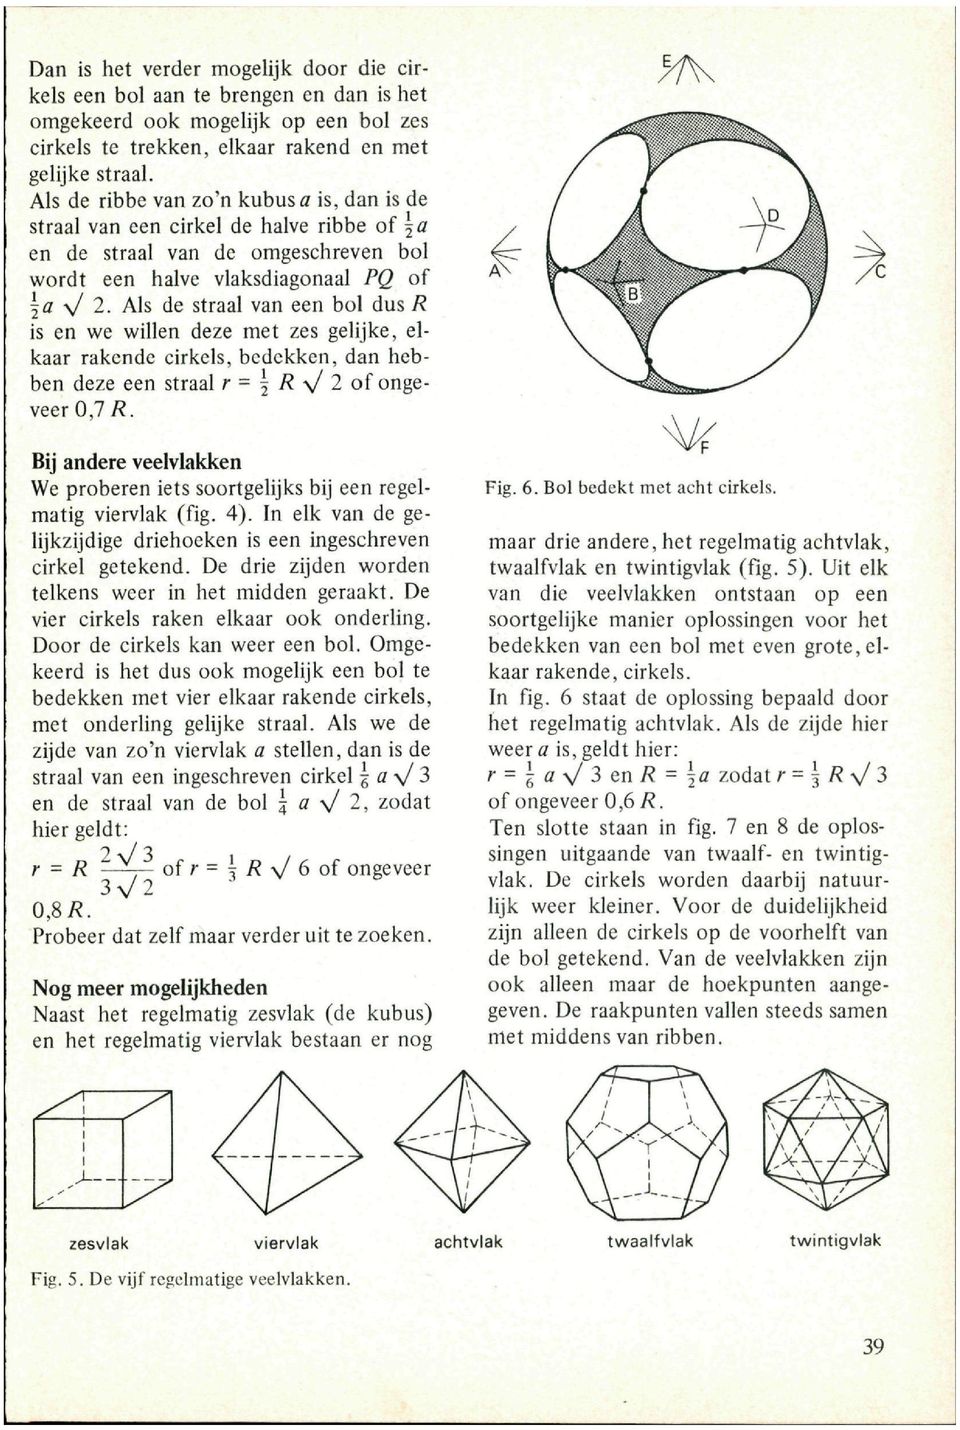 Uit elk van die veelvlakken ontstaan op een soortgelijke manier oplossingen voor het bedekken van een bol met even grote, elkaar rakende, cirkels. In fig.